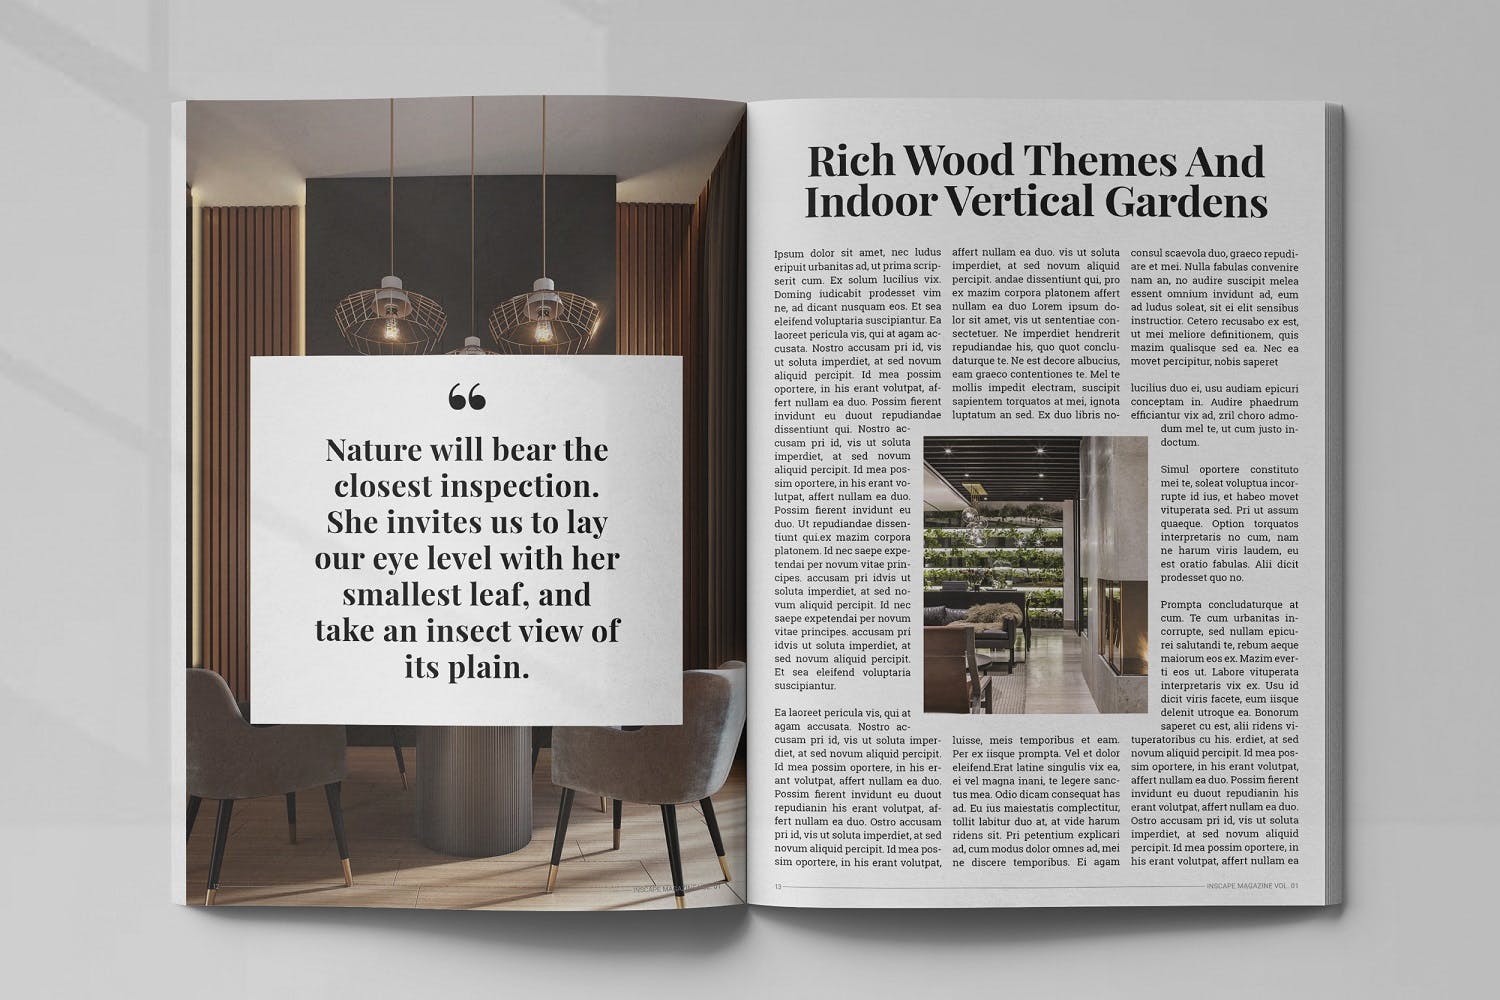 室内设计主题素材库精选杂志排版设计模板 Inscape Interior Magazine插图(6)